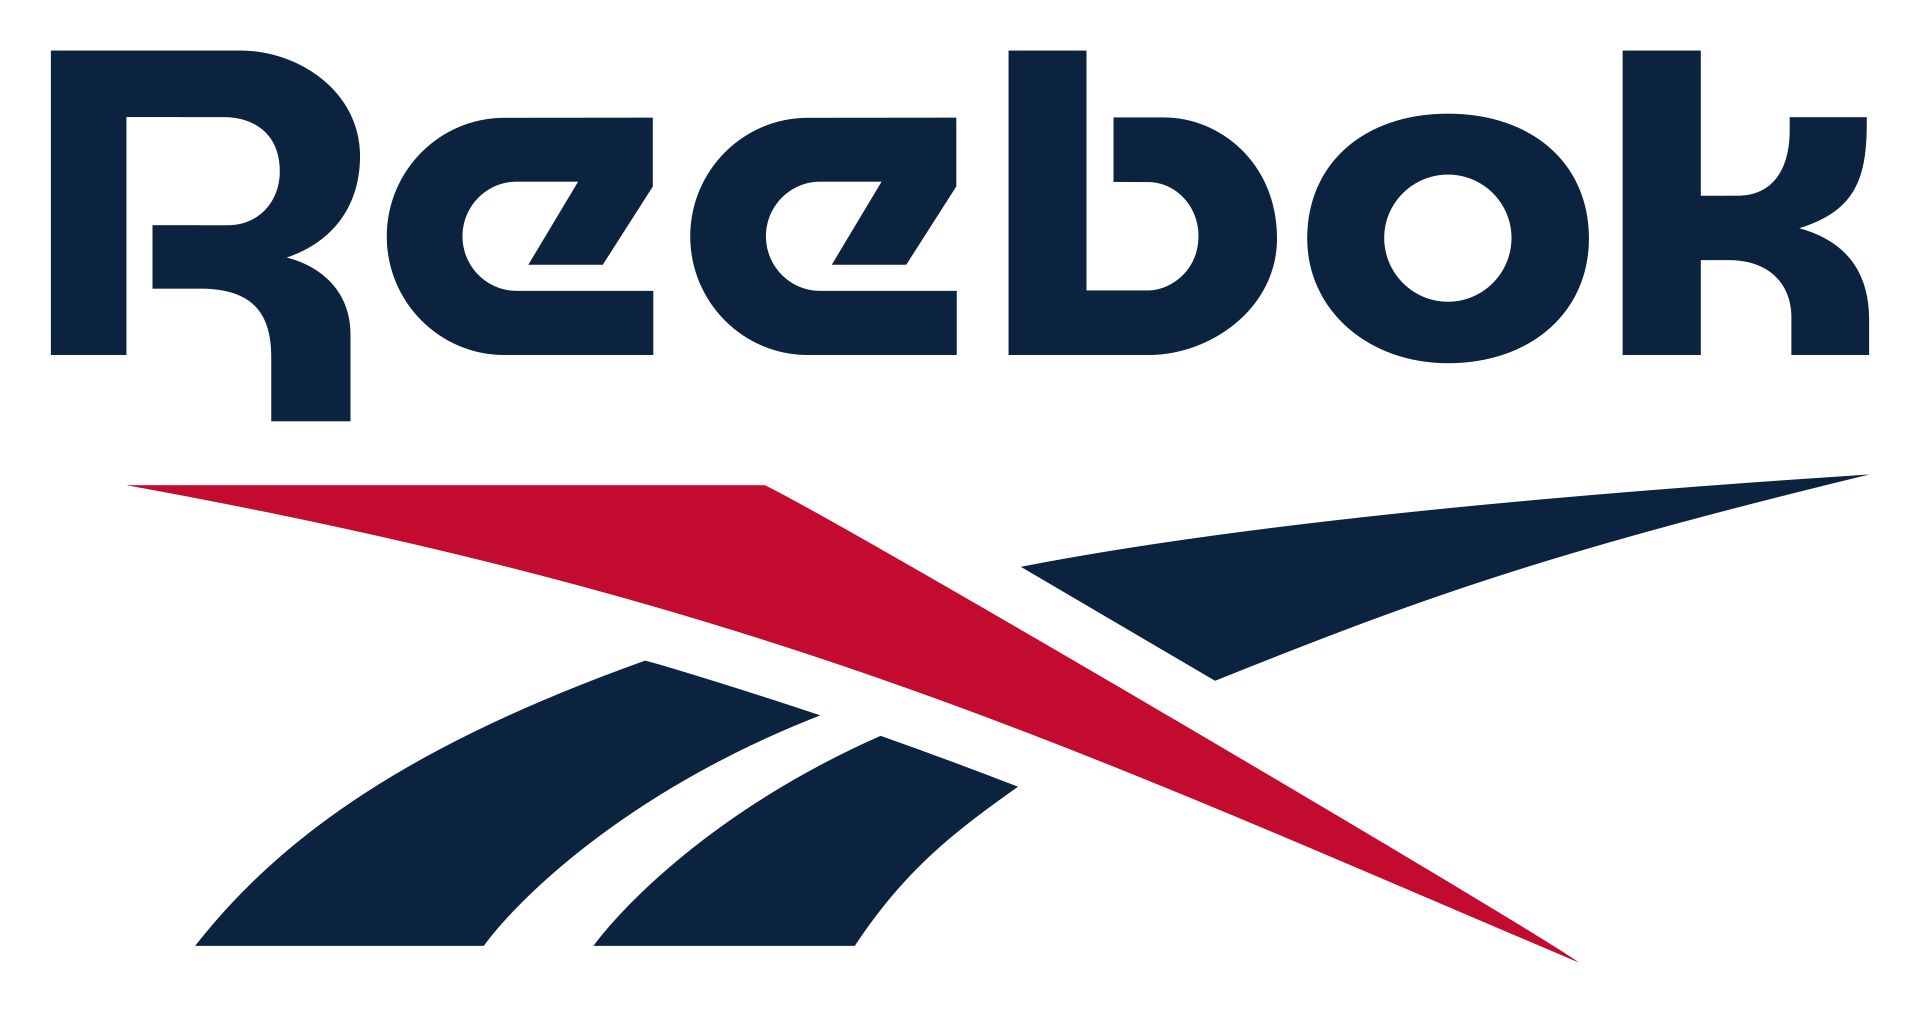 锐步运动品牌logo设计 力英品牌设计顾问公司